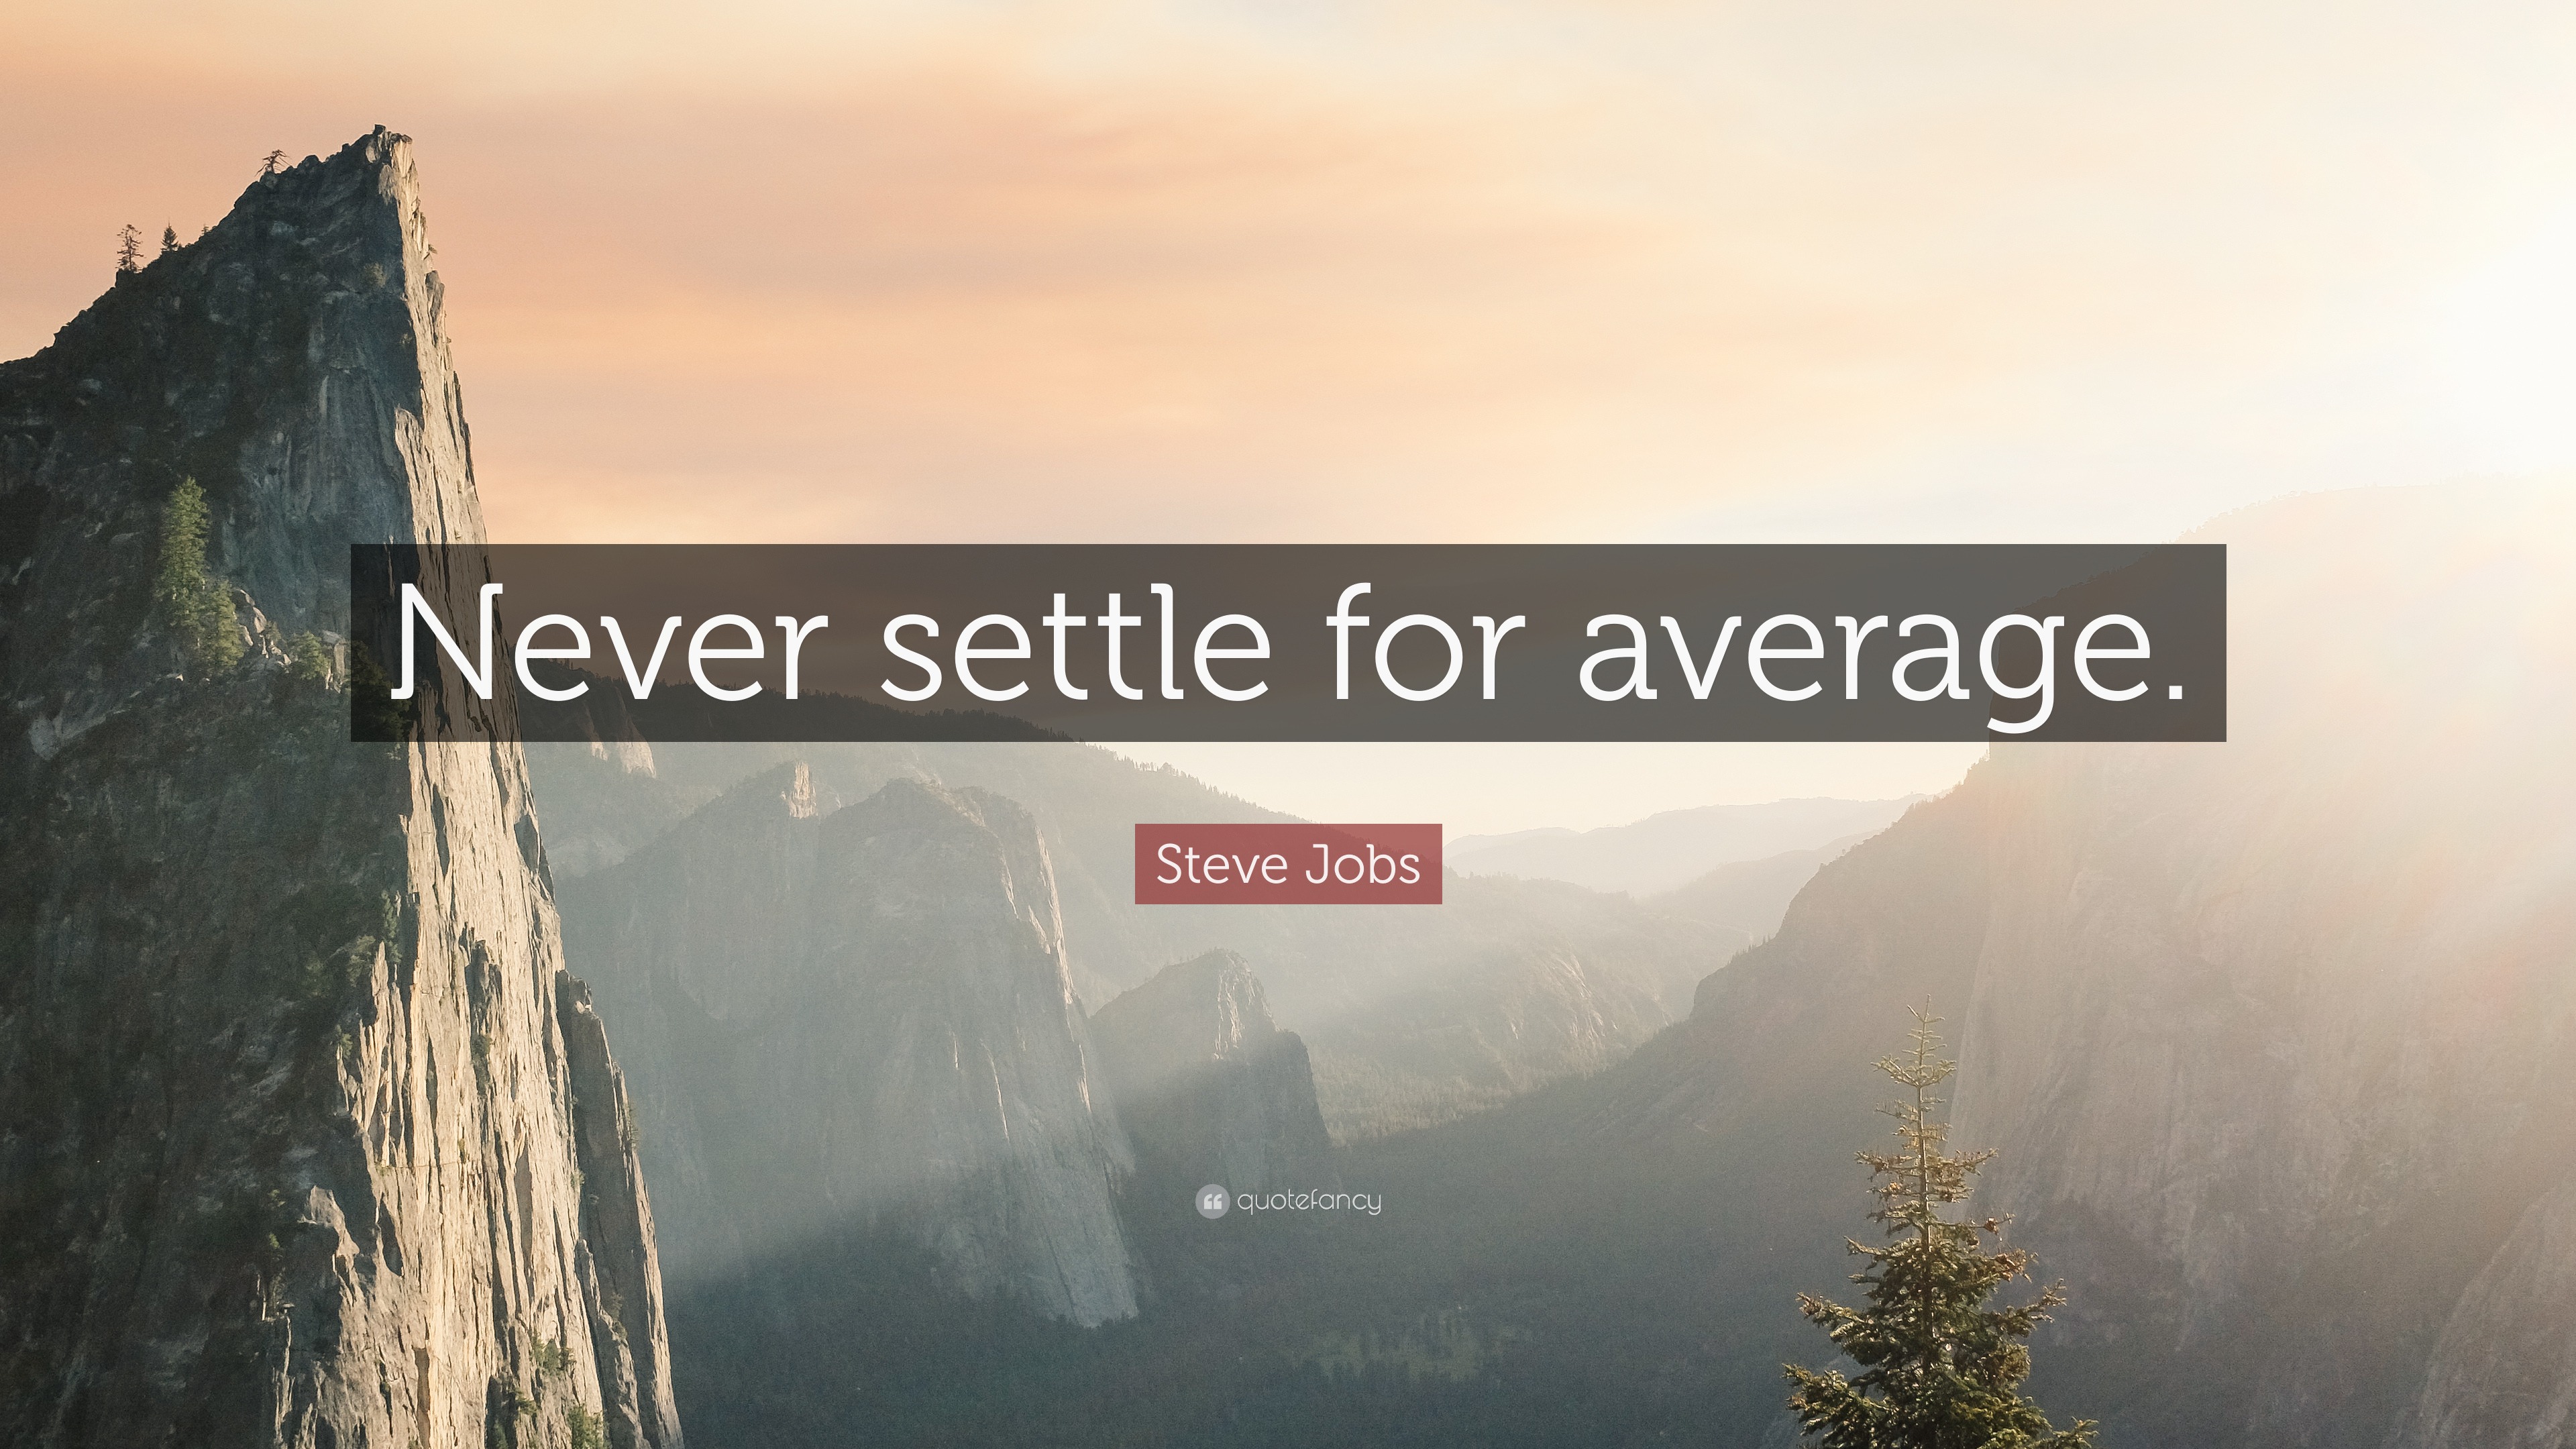 Steve Jobs Quote: “Never settle for average.”